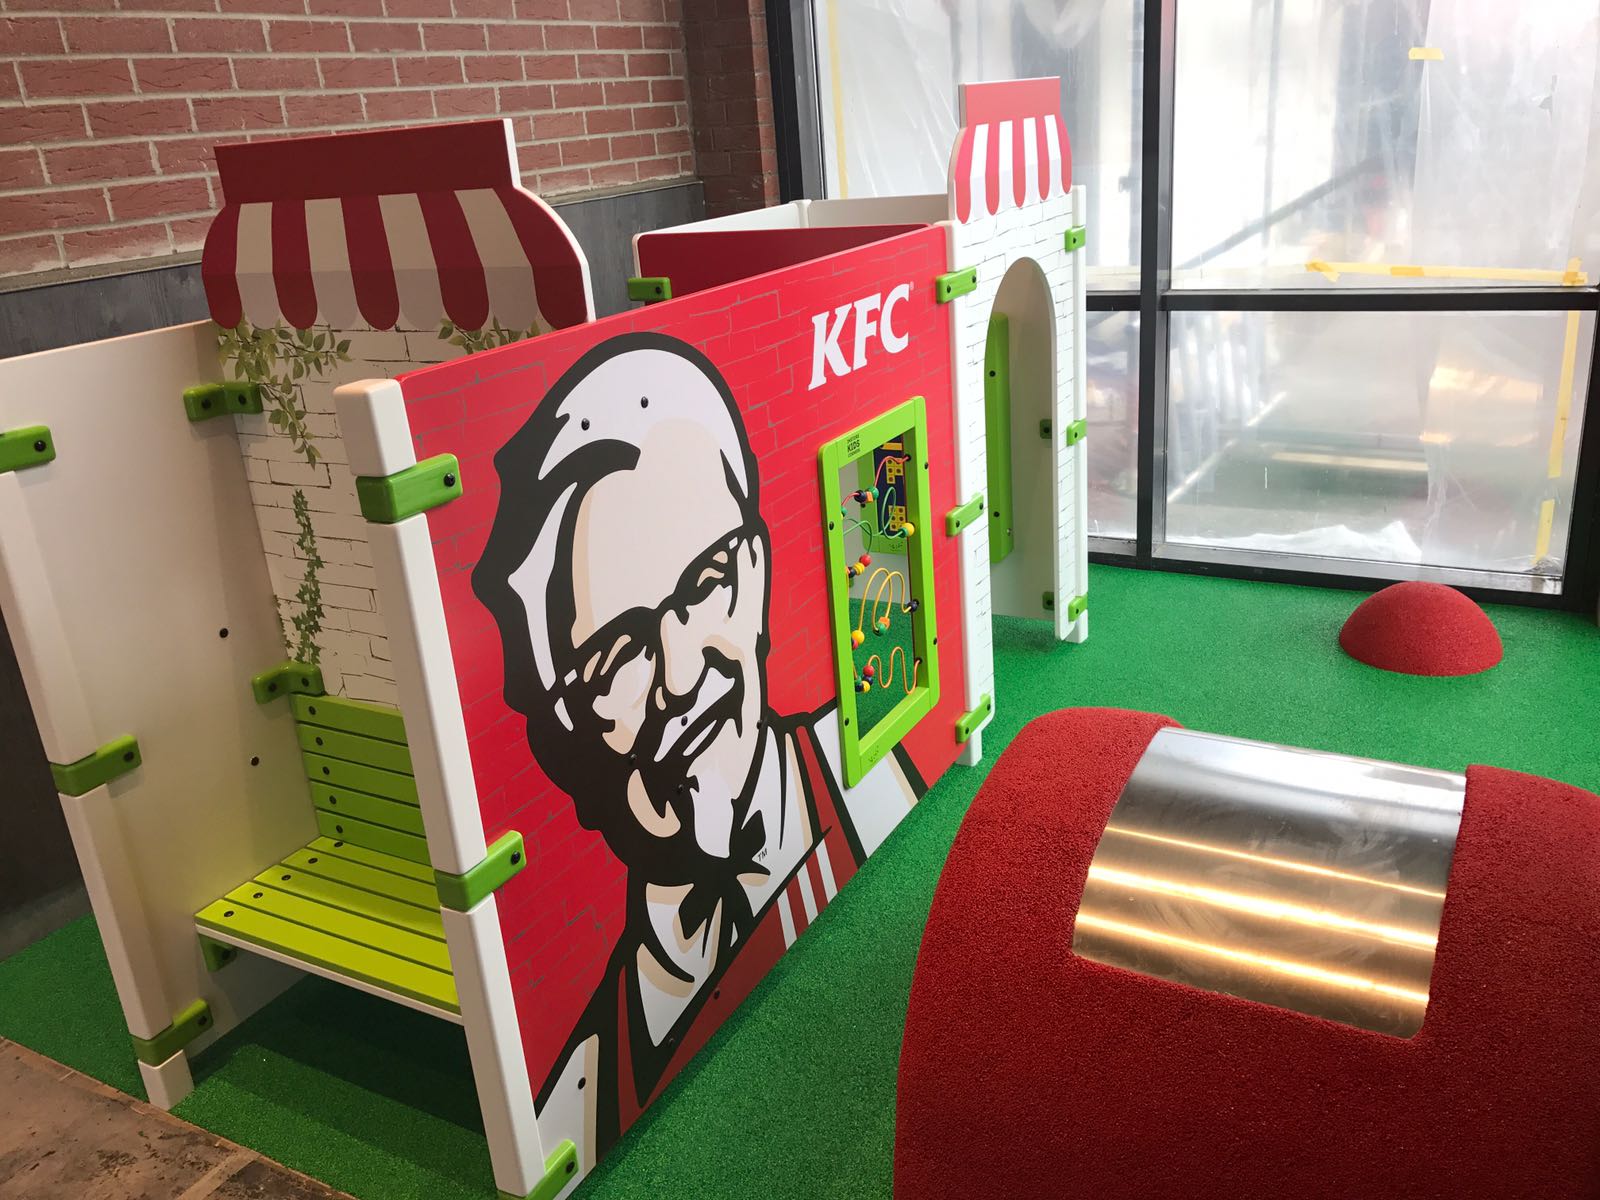 Σύστημα αναπαραγωγής KFC στο εστιατόριο